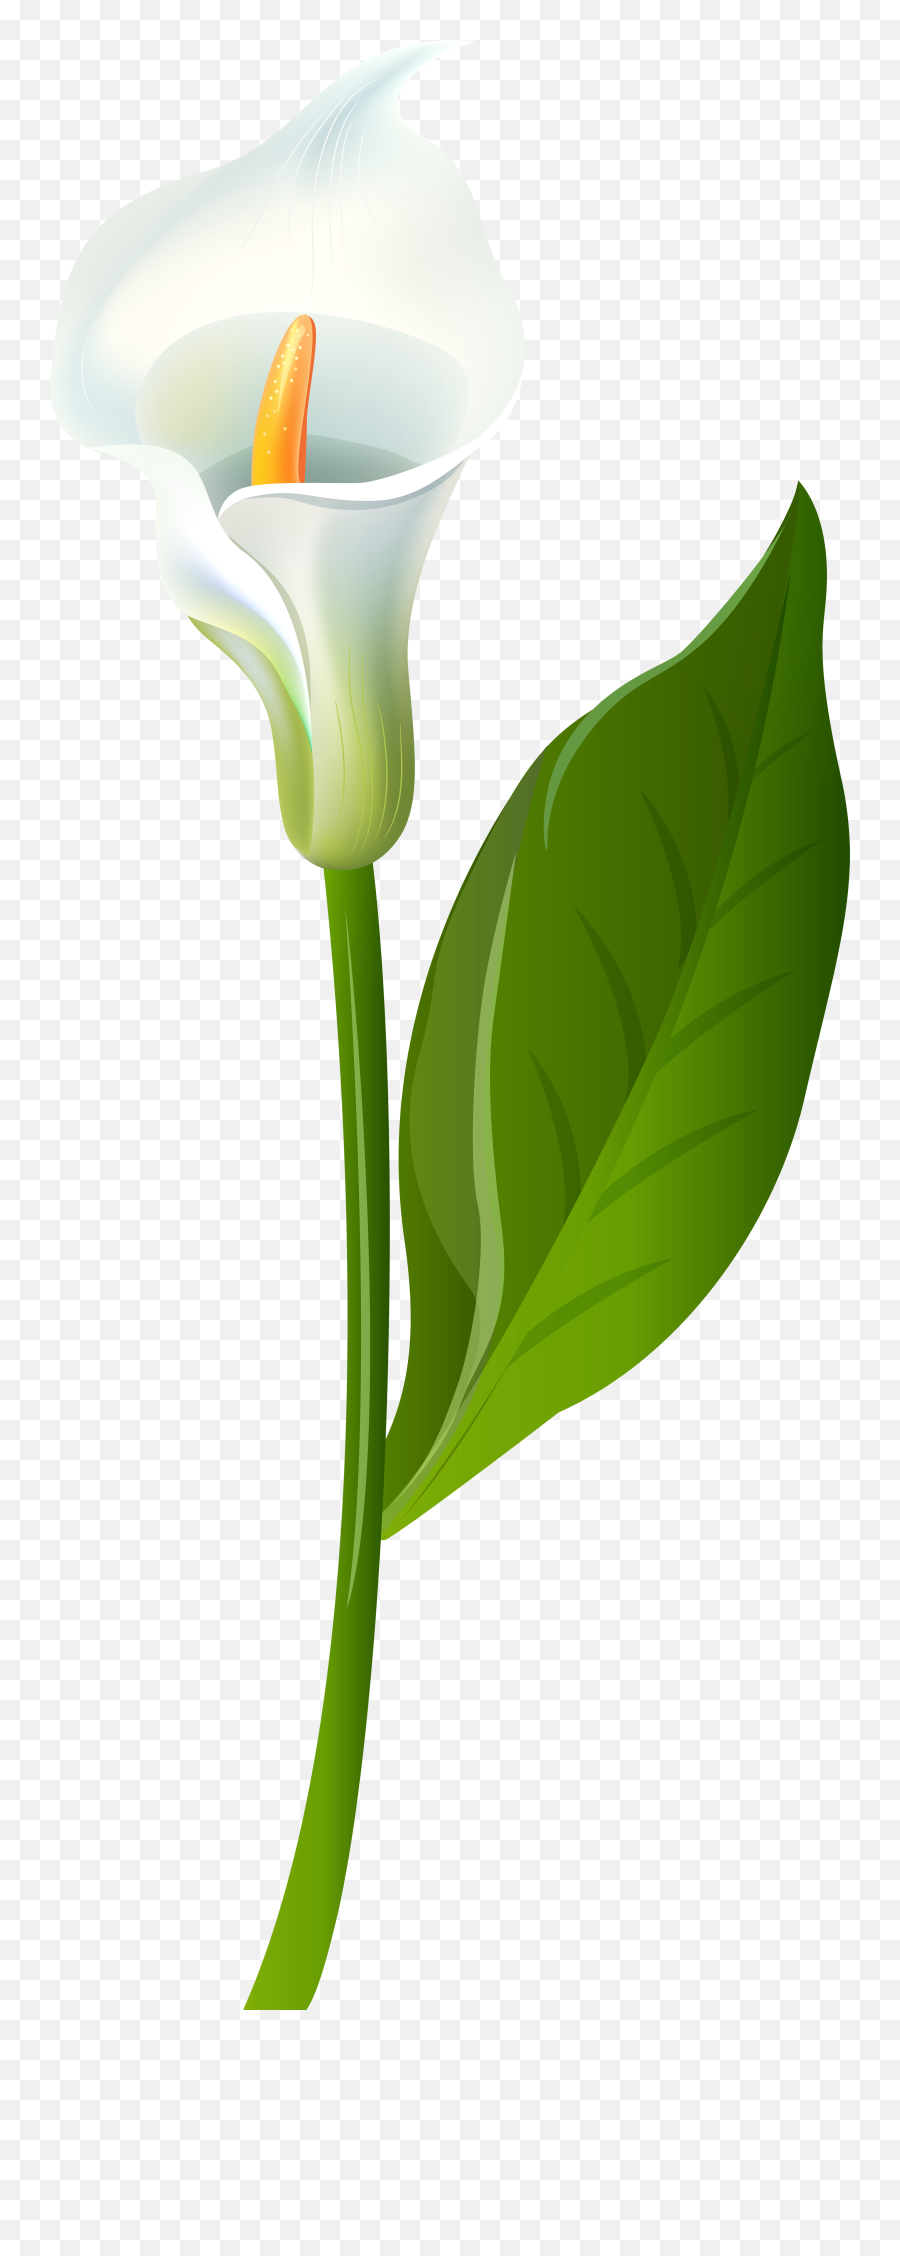 Leaf Flower Plant Stem Green - Calla Lily Transparent Png Lily Flower White Calla,Flower Stem Png